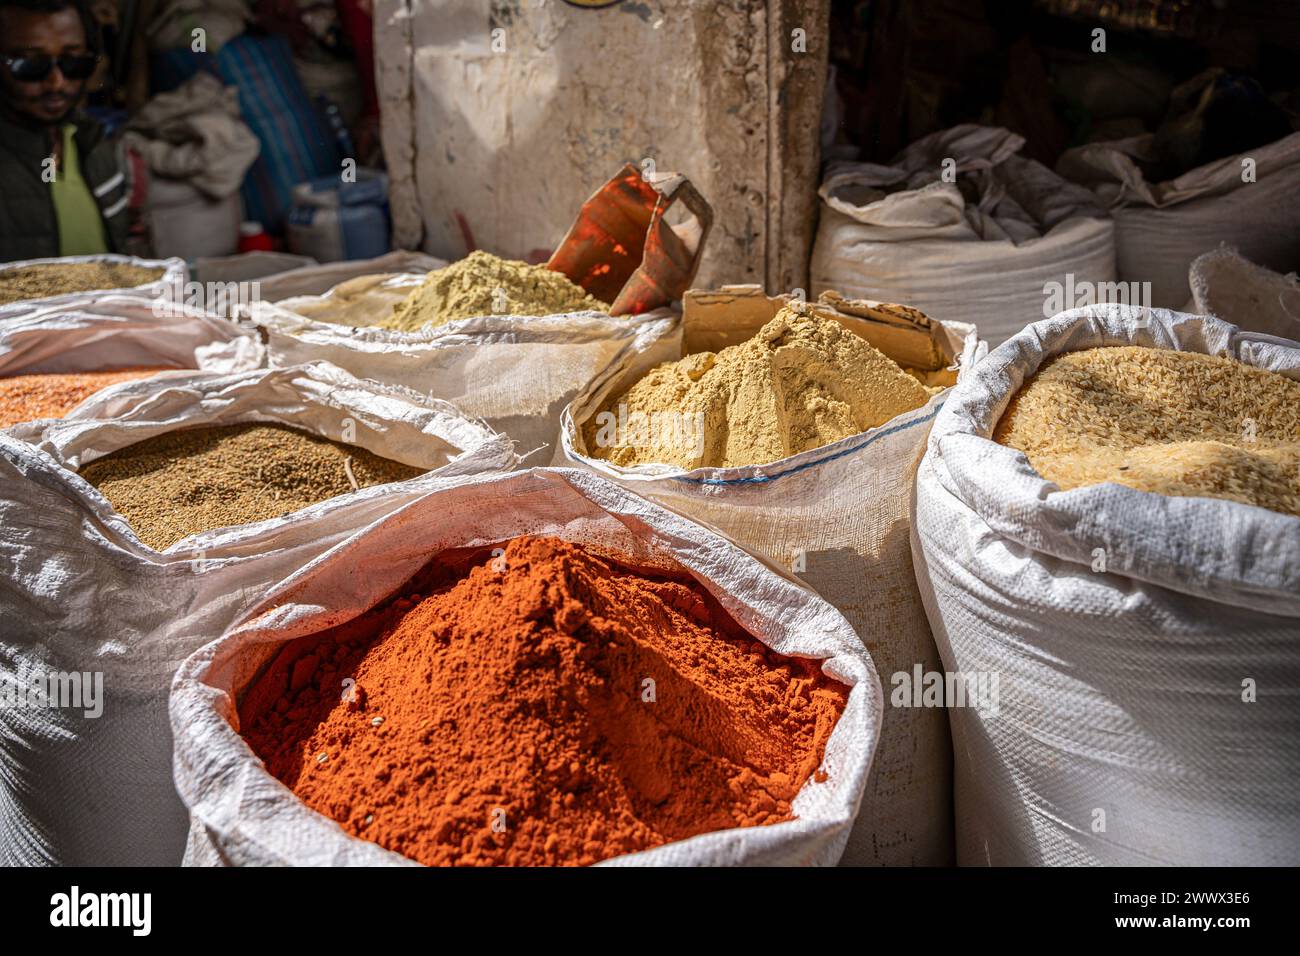 Les épices et les pois à l'ancien marché de la ville, région, Harari, Harar Ethiopie Banque D'Images